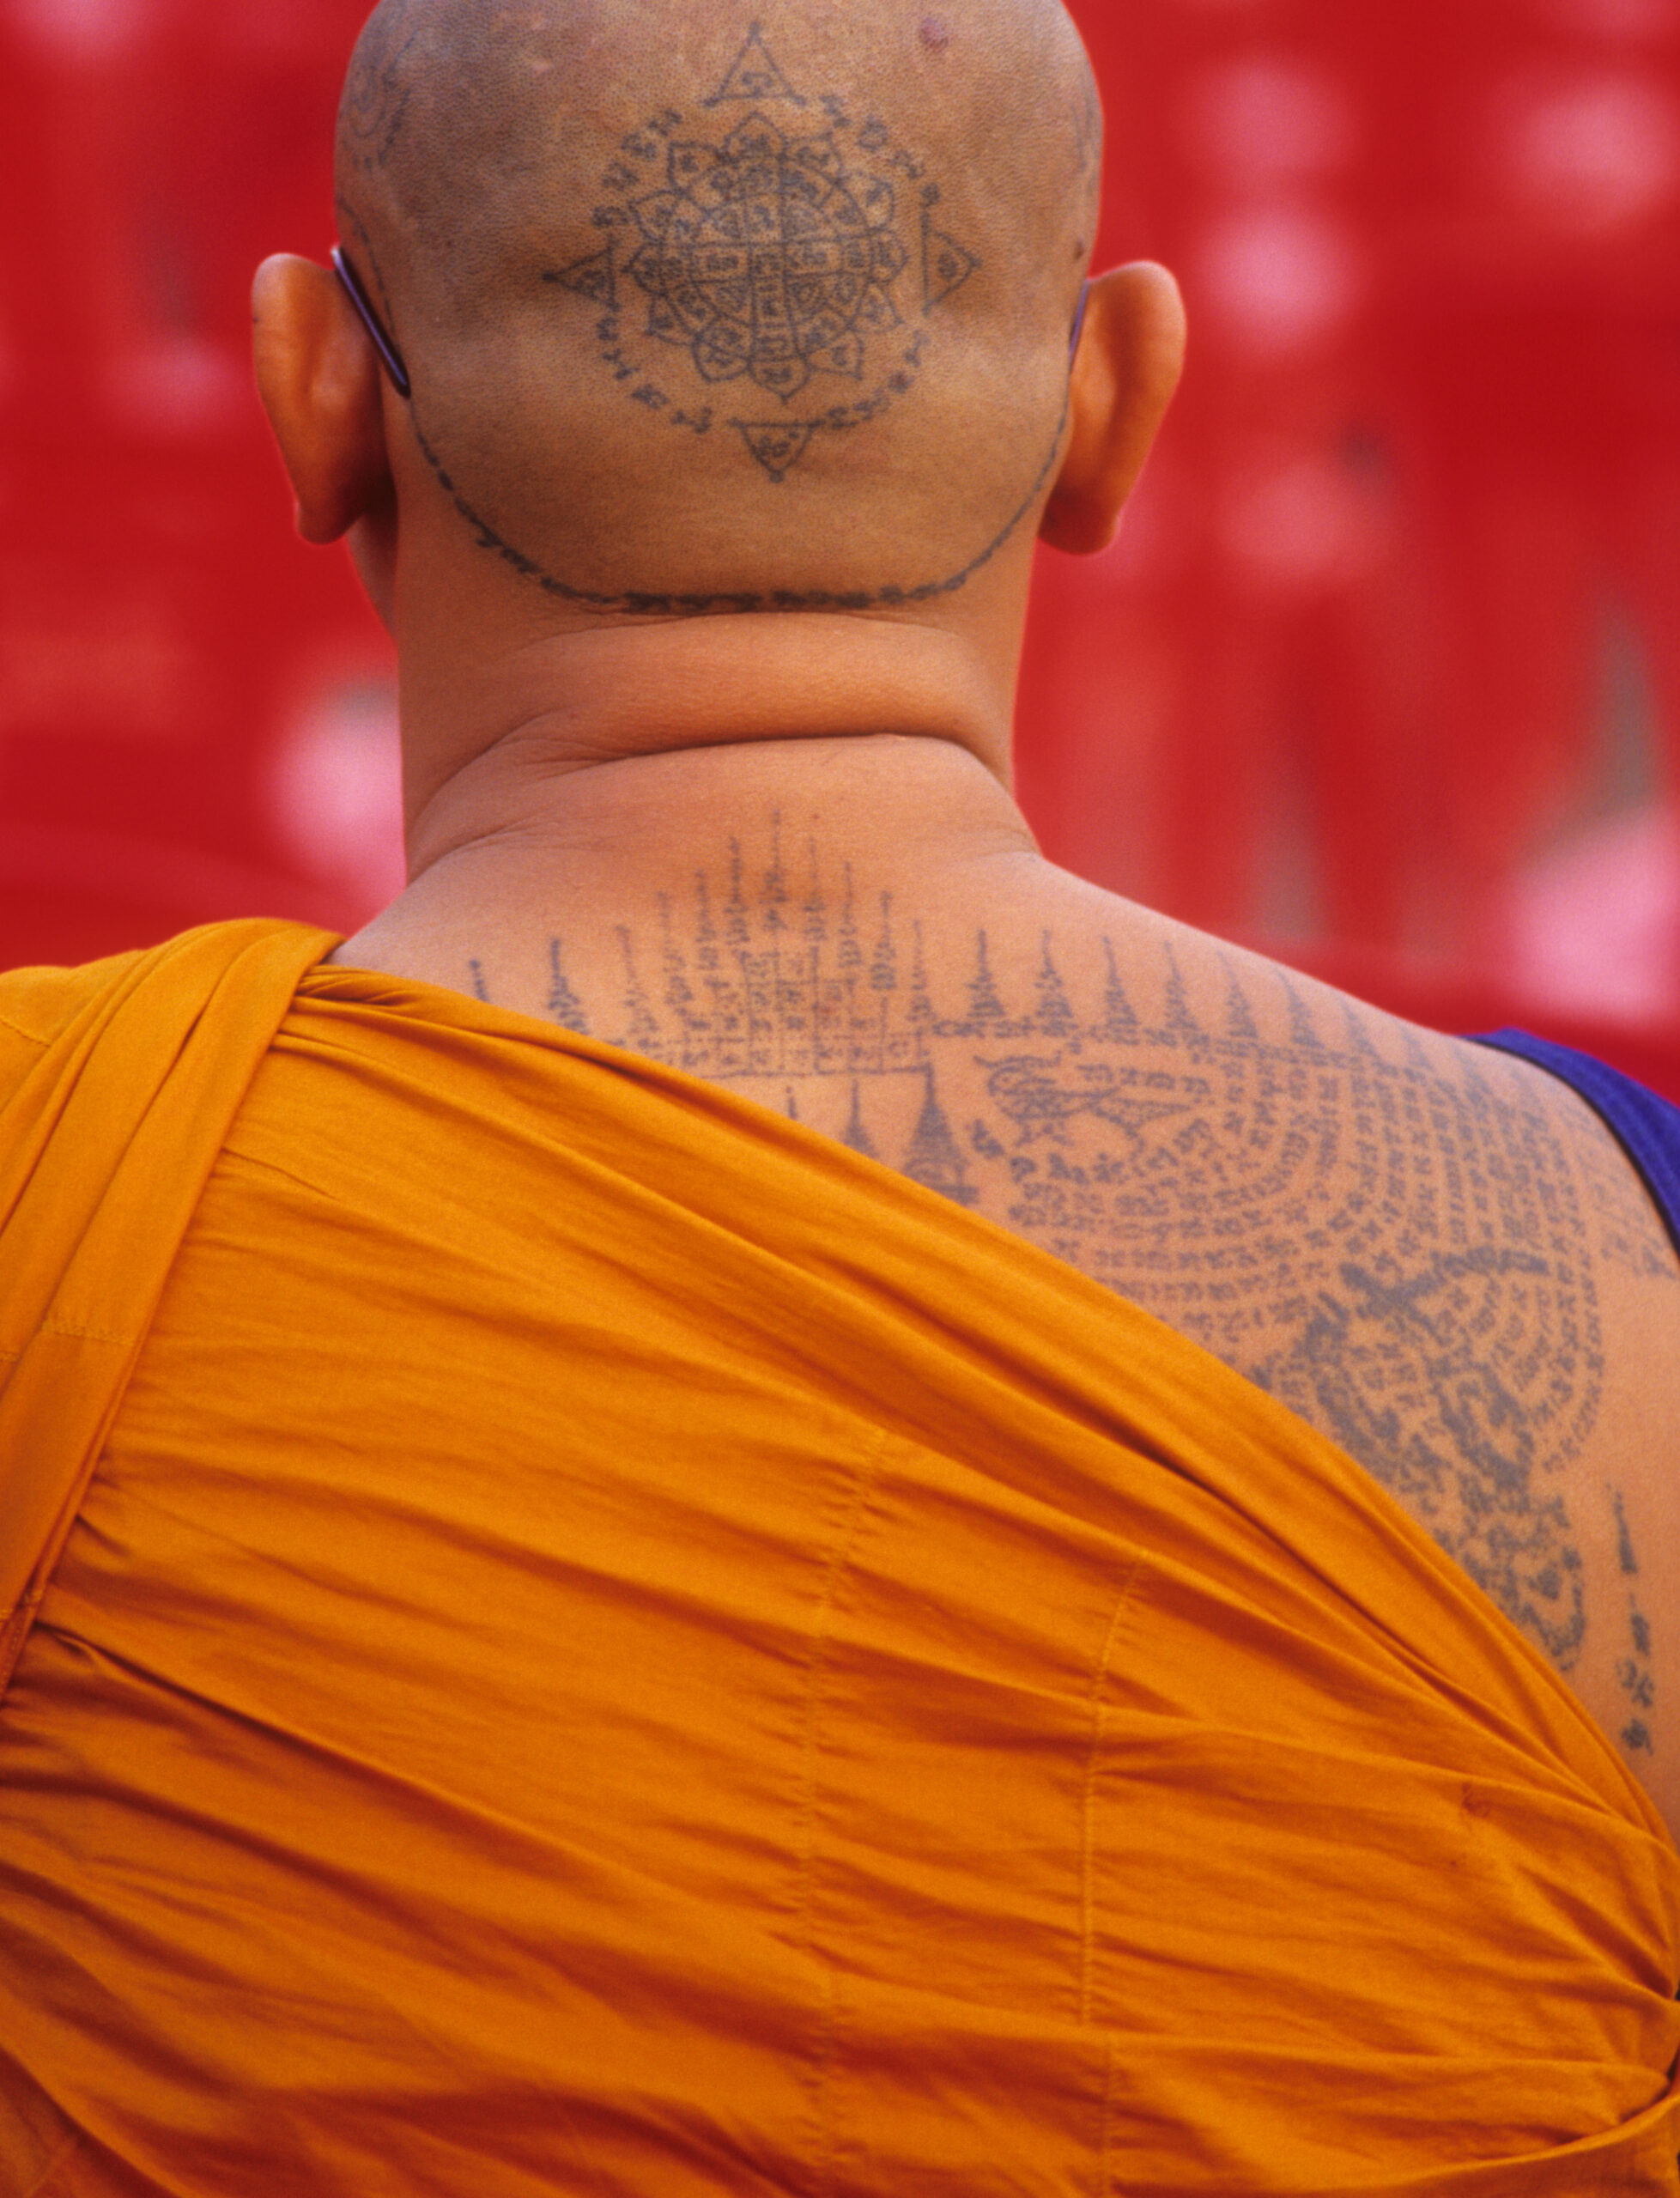 Magic tattoos in Wat Bang Phra, Nakhon Pathom